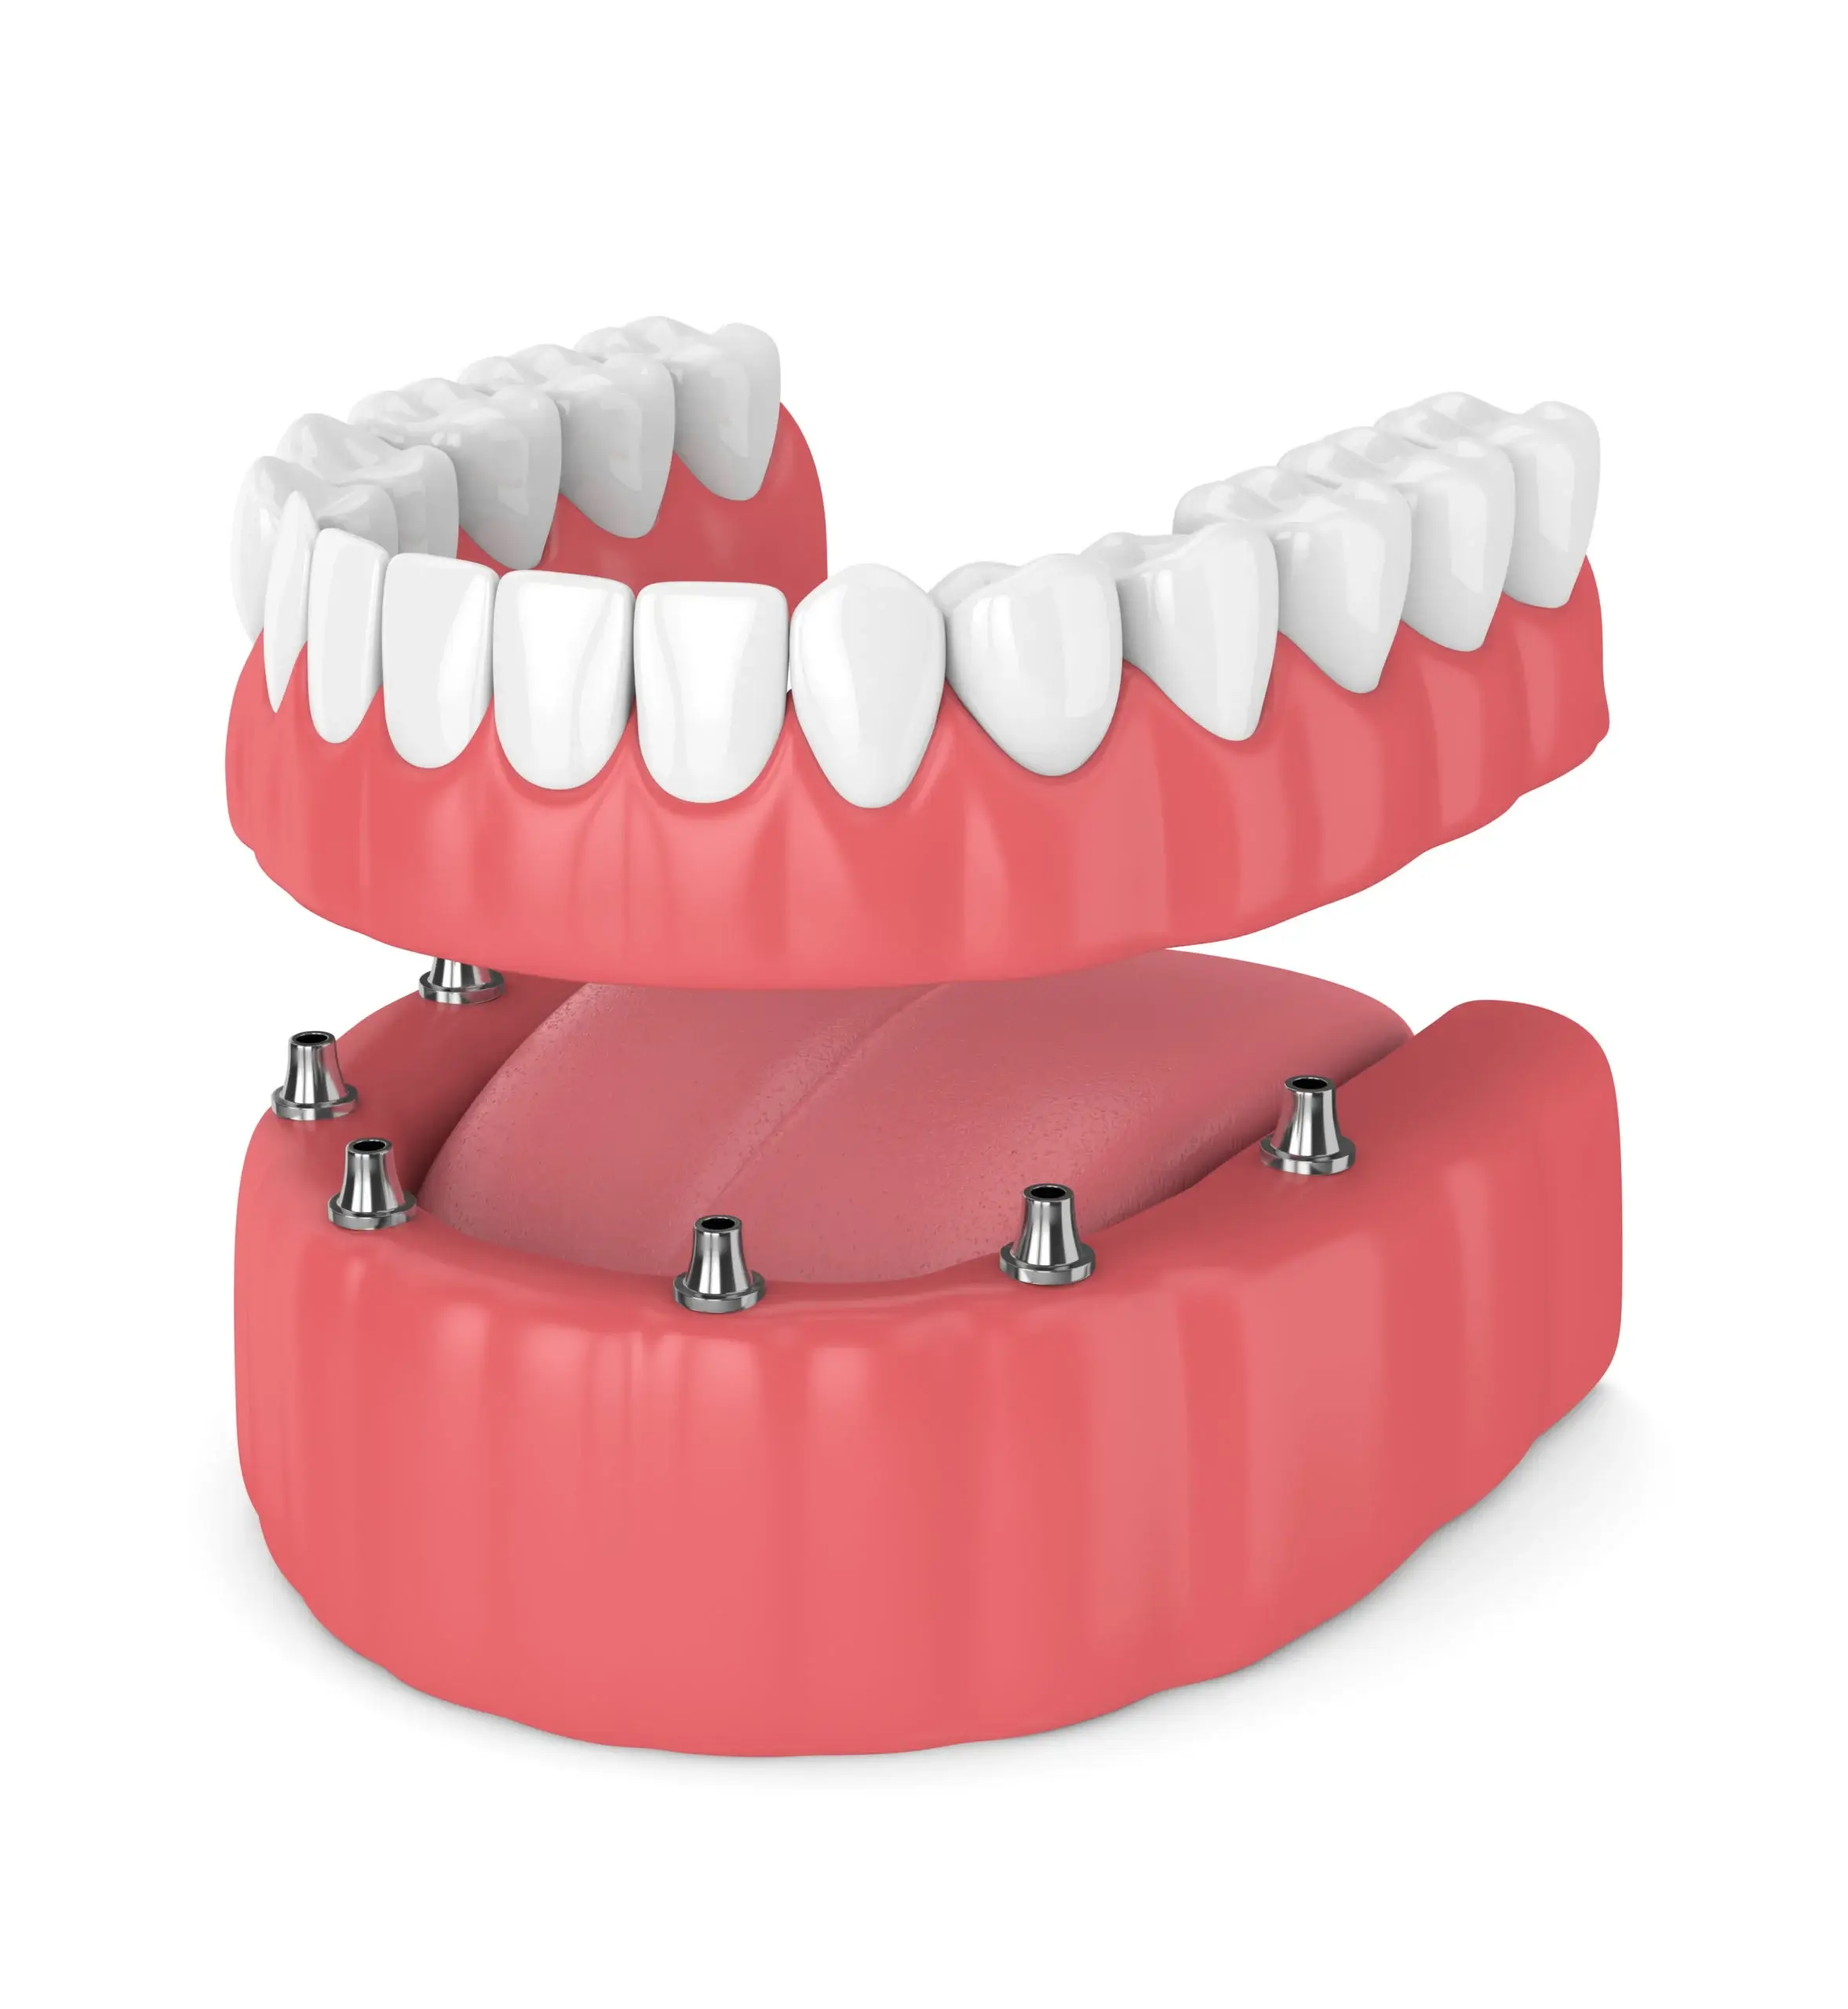 Náklady na celoústní zubní implantáty s pojištěním